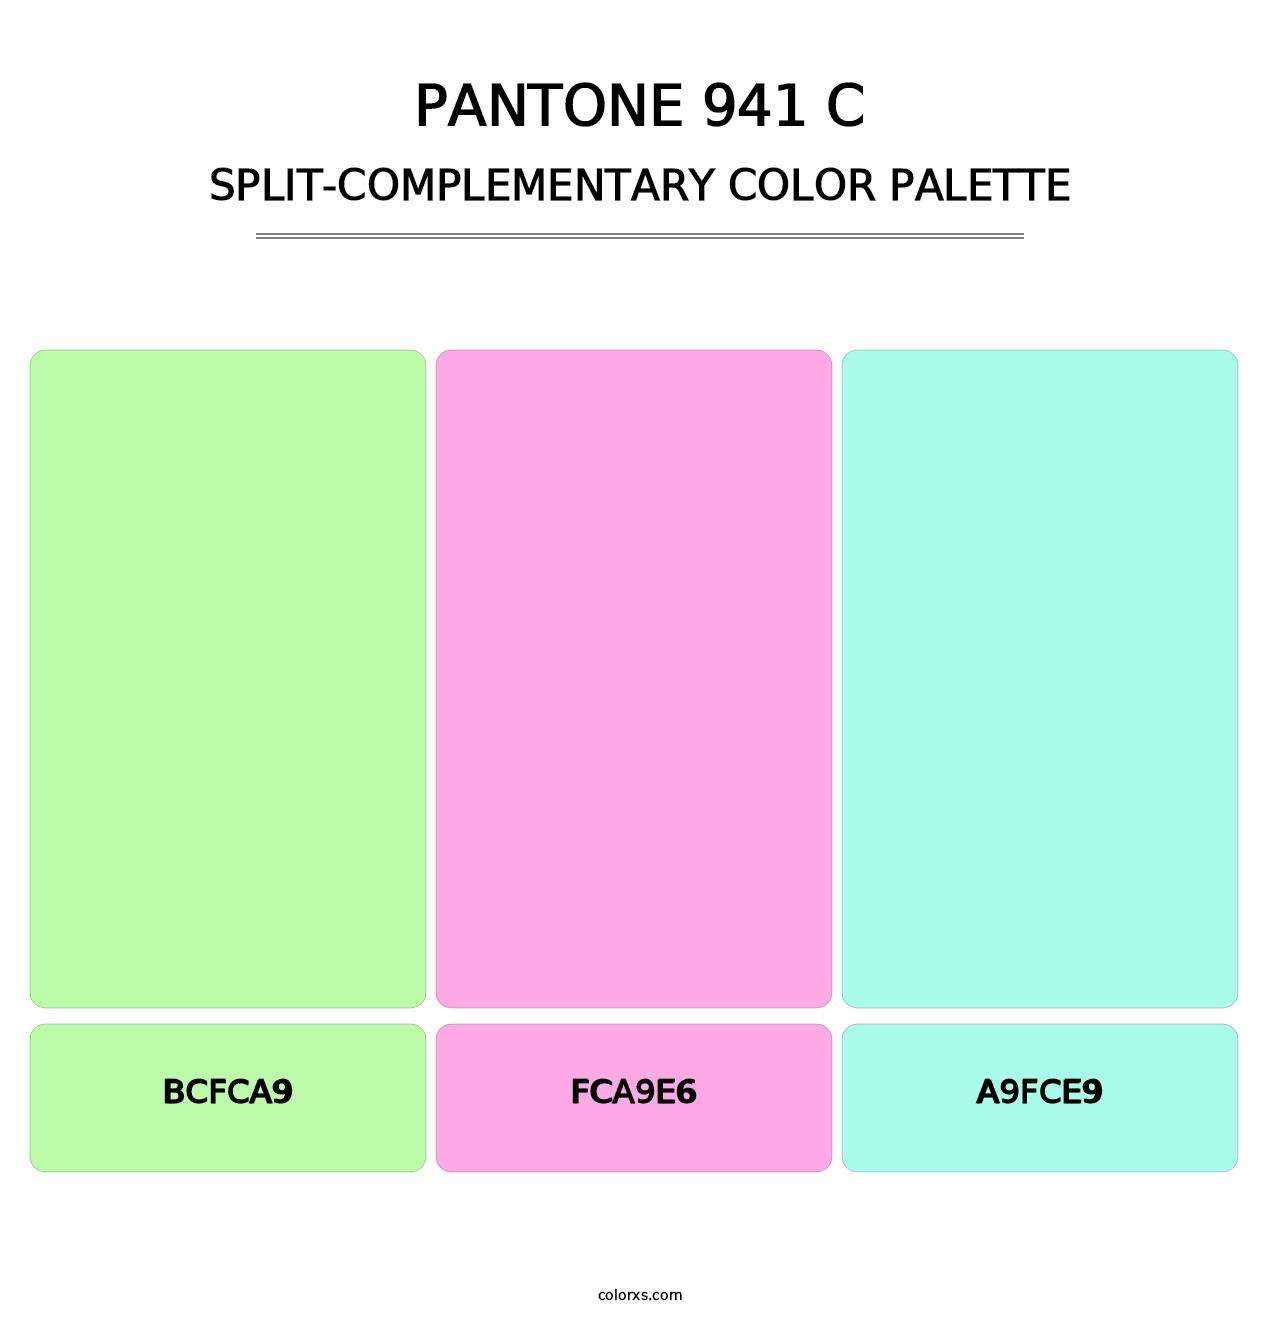 PANTONE 941 C - Split-Complementary Color Palette